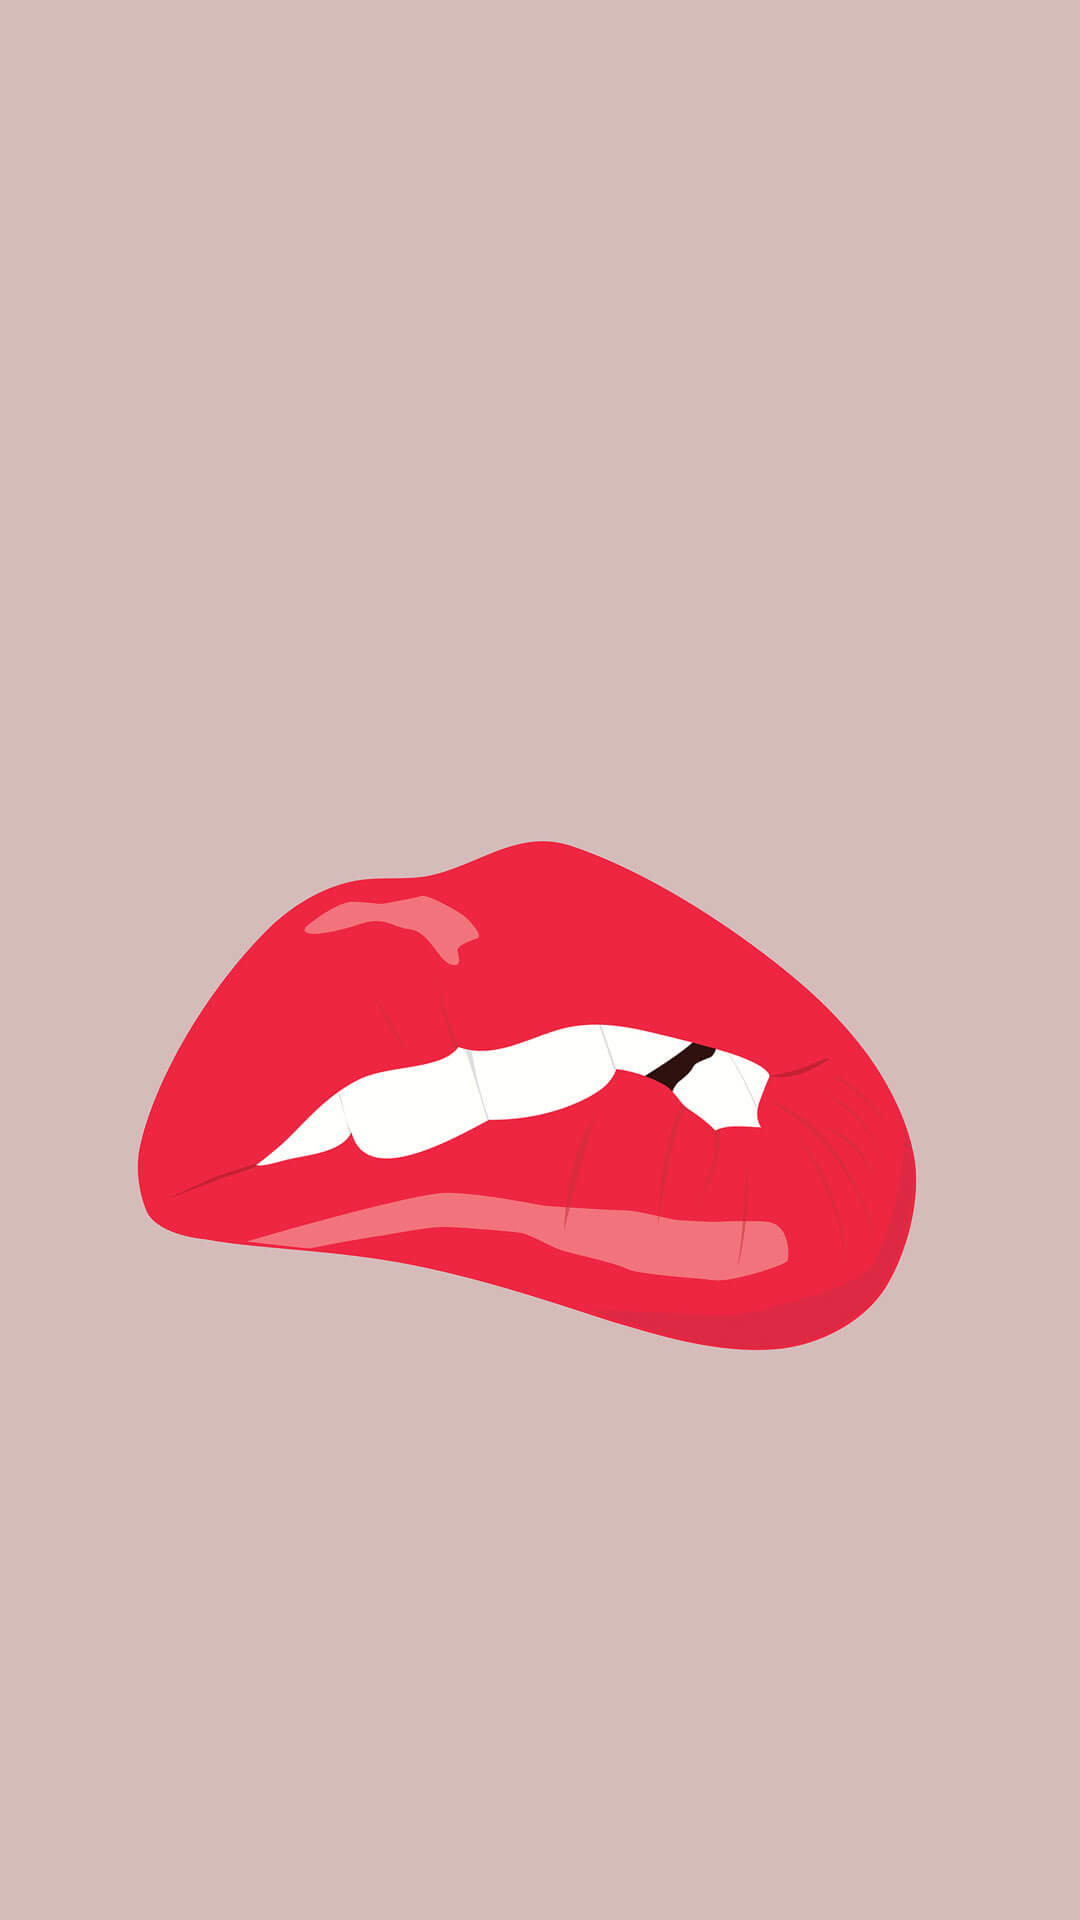 lindos fondos de pantalla para iphone,labio,rojo,boca,ilustración,sonrisa